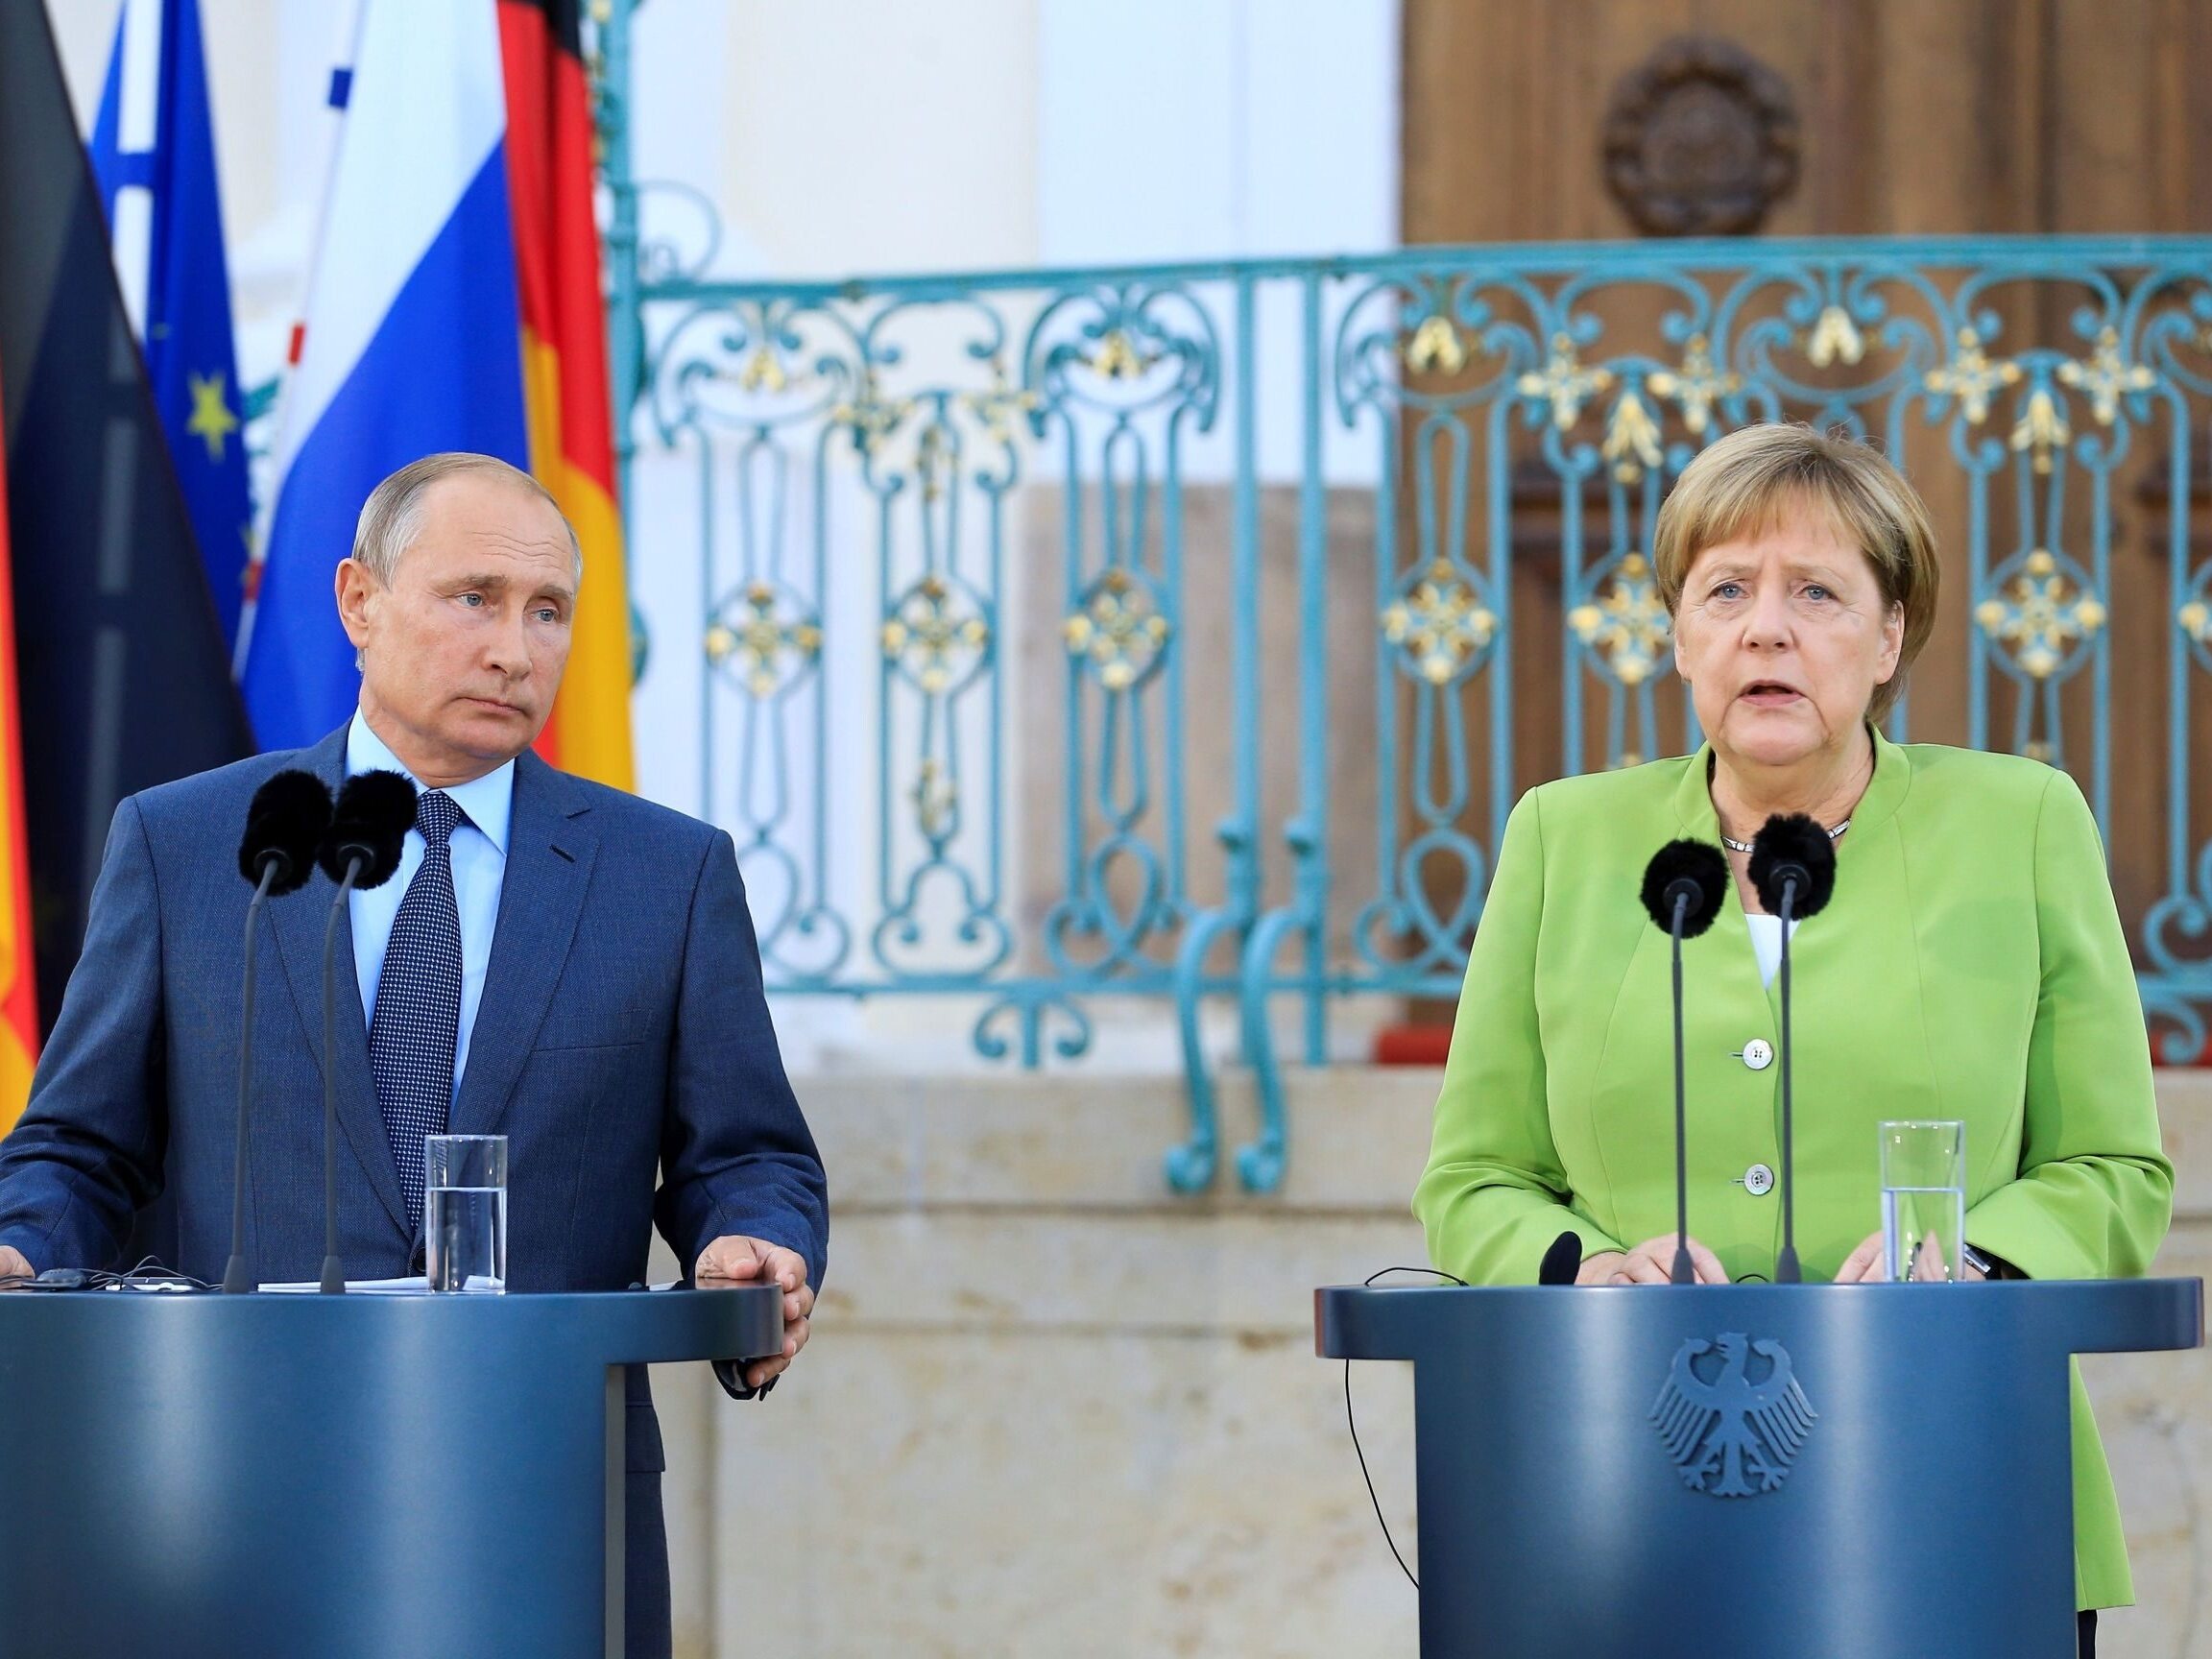 La France et l’Allemagne accusent la Russie d’avoir rompu le protocole diplomatique – Wprost